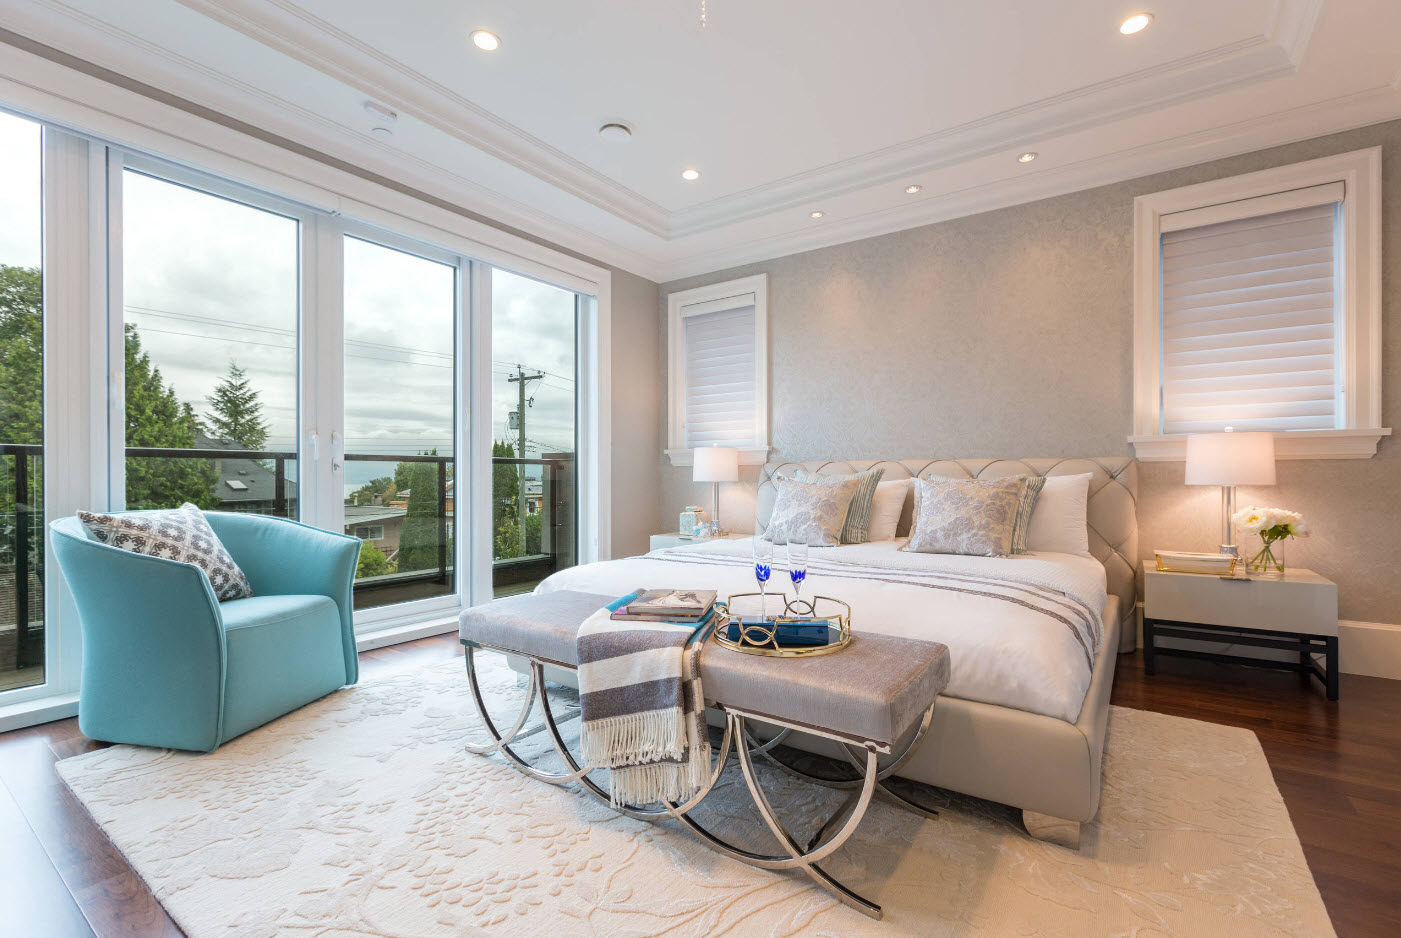 Camera da letto in beige chiaro